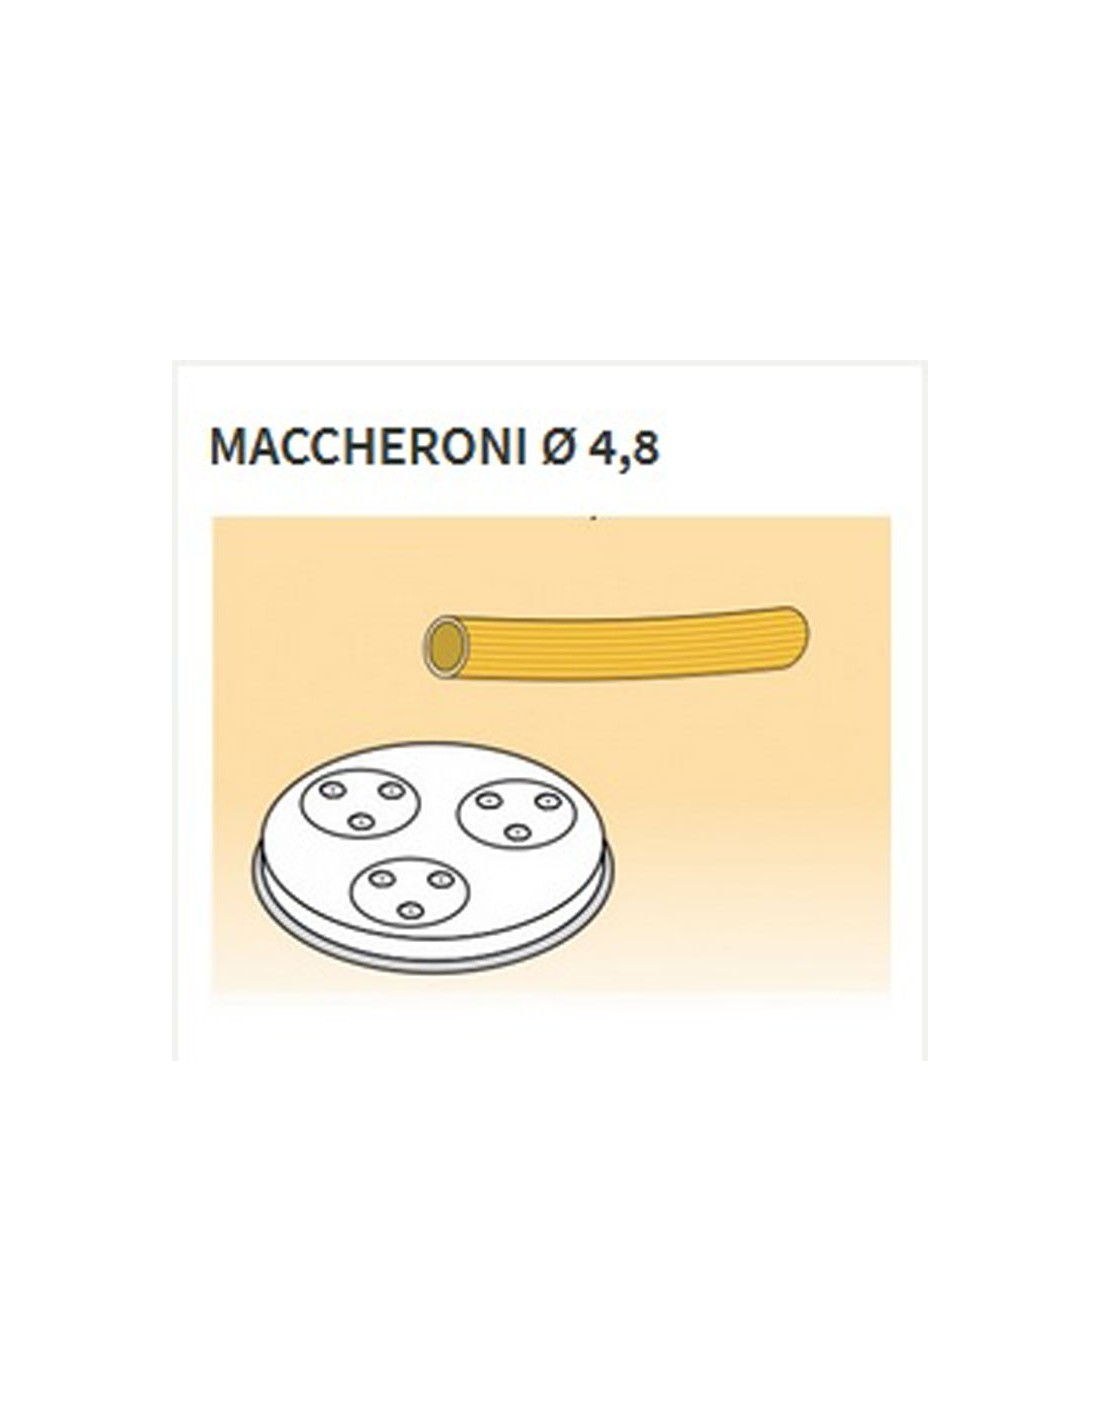 Matrices de aleación de latón de varias formas - Bronce - Para MPF25 - MPF4N - Maccheroni Ø 4.8 mm